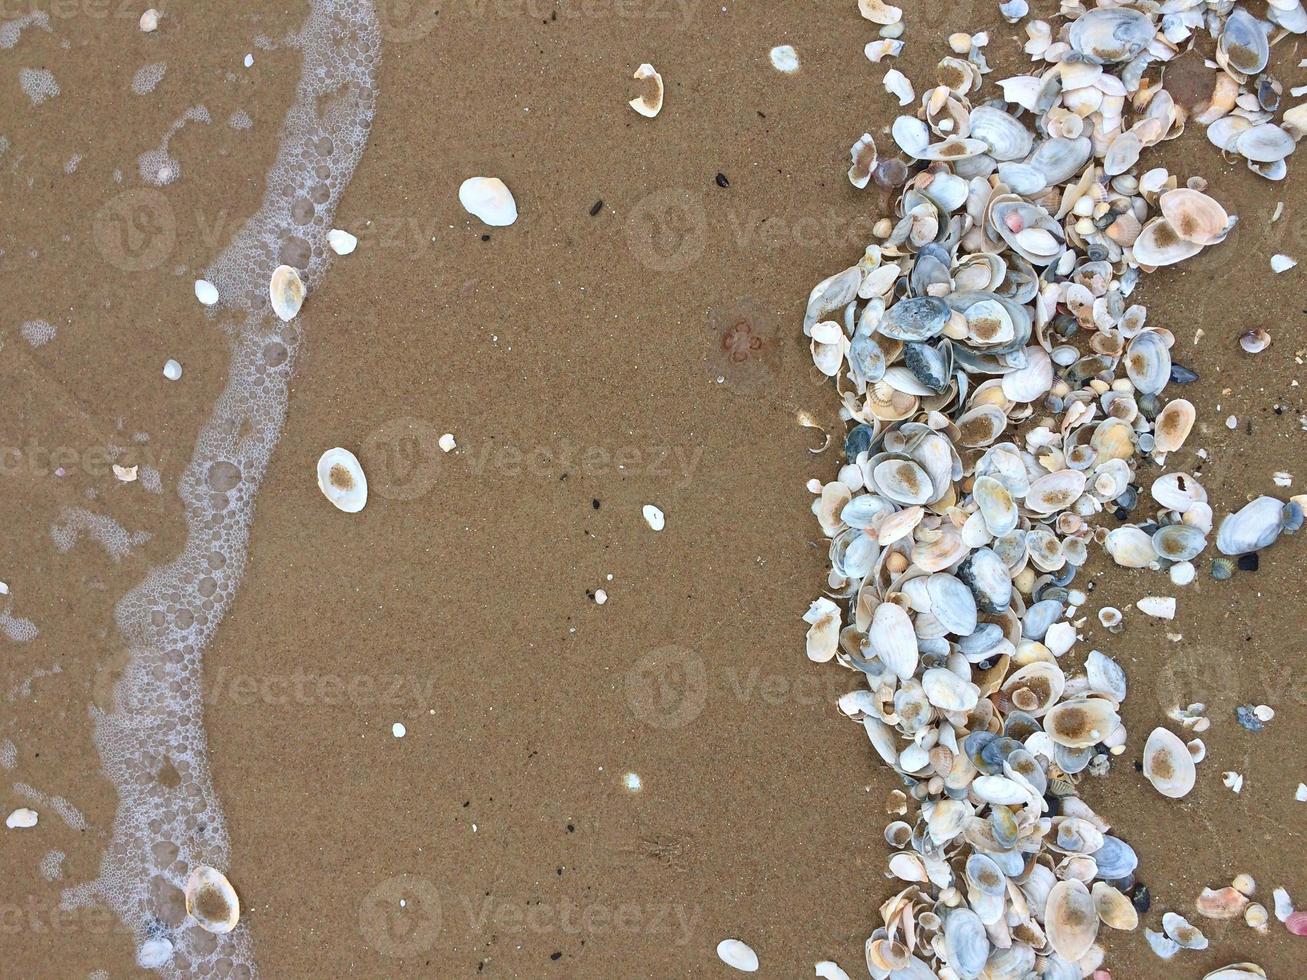 Pattern of Seashells on the sand, textured background. Sea shells on the beach of the Baltic sea. photo